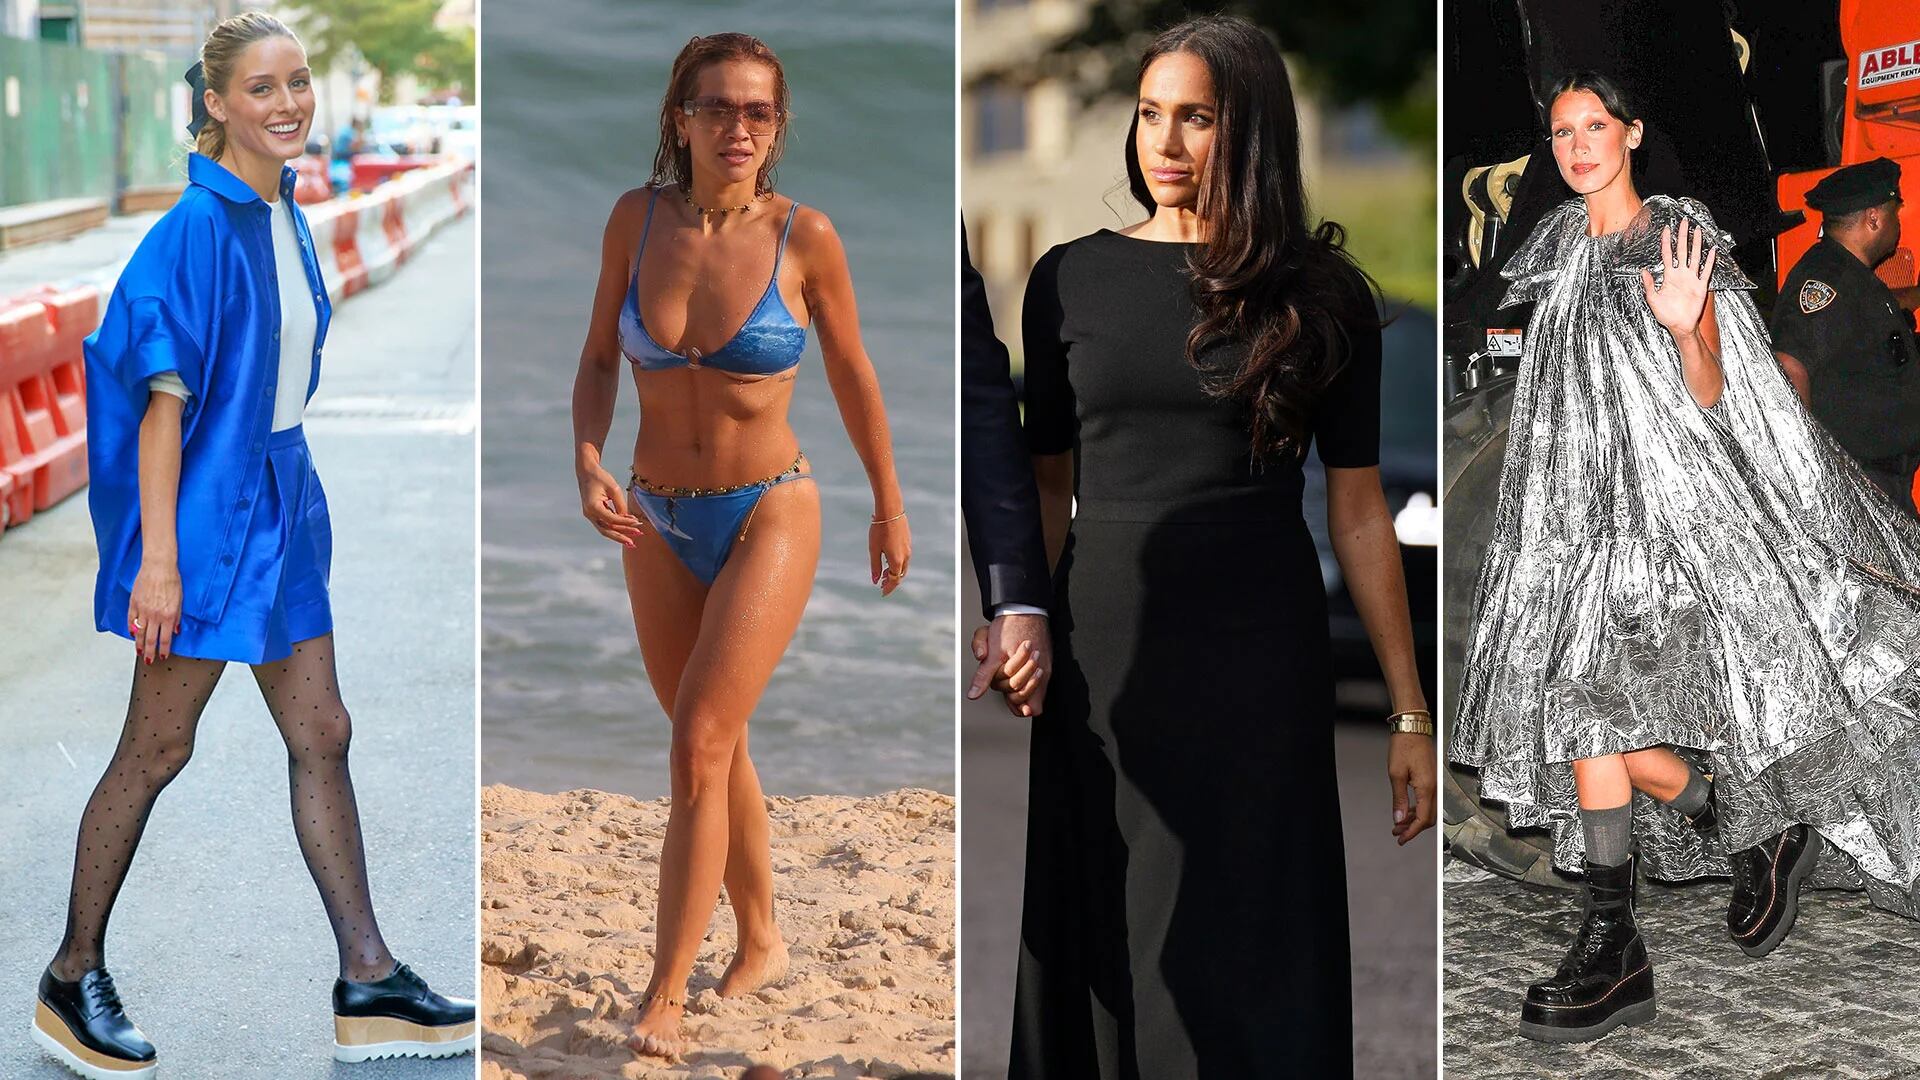 Del incómodo reencuentro familiar de Meghan Markle al día de playa de Rita Ora: celebrities en un click